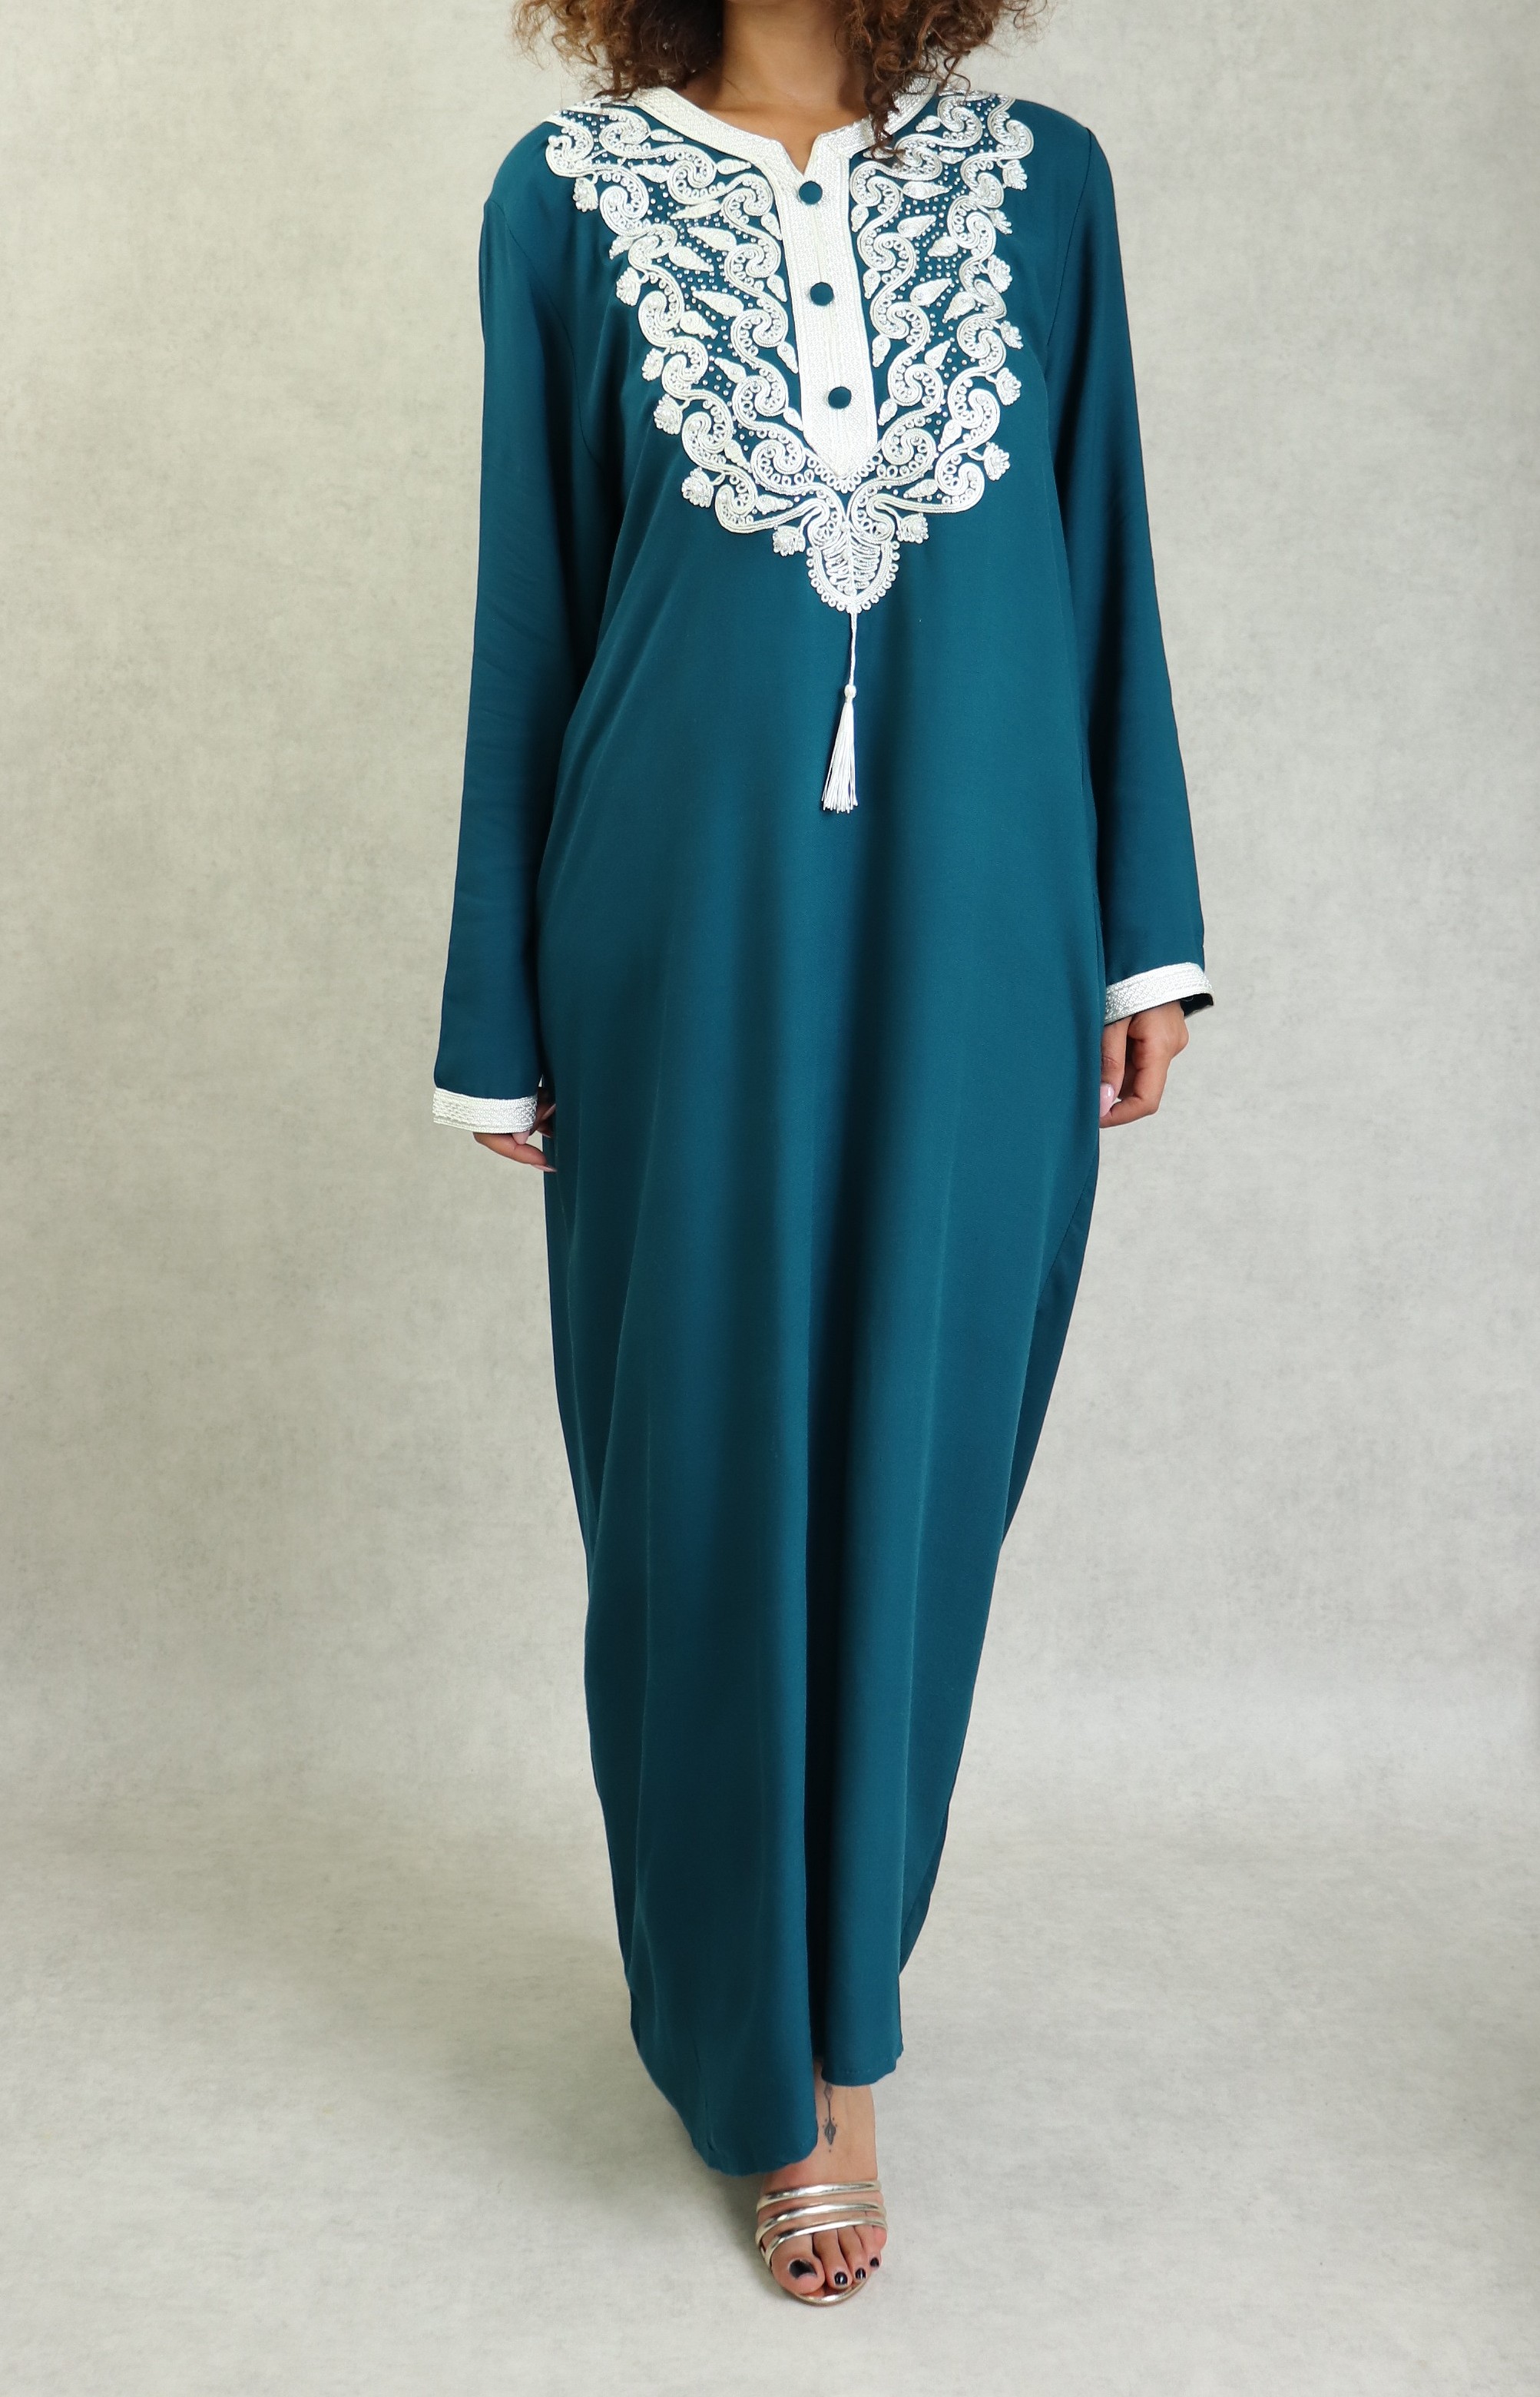 Robe orientale longue pour femme avec broderies dorées - Couleur bleu  turquoise